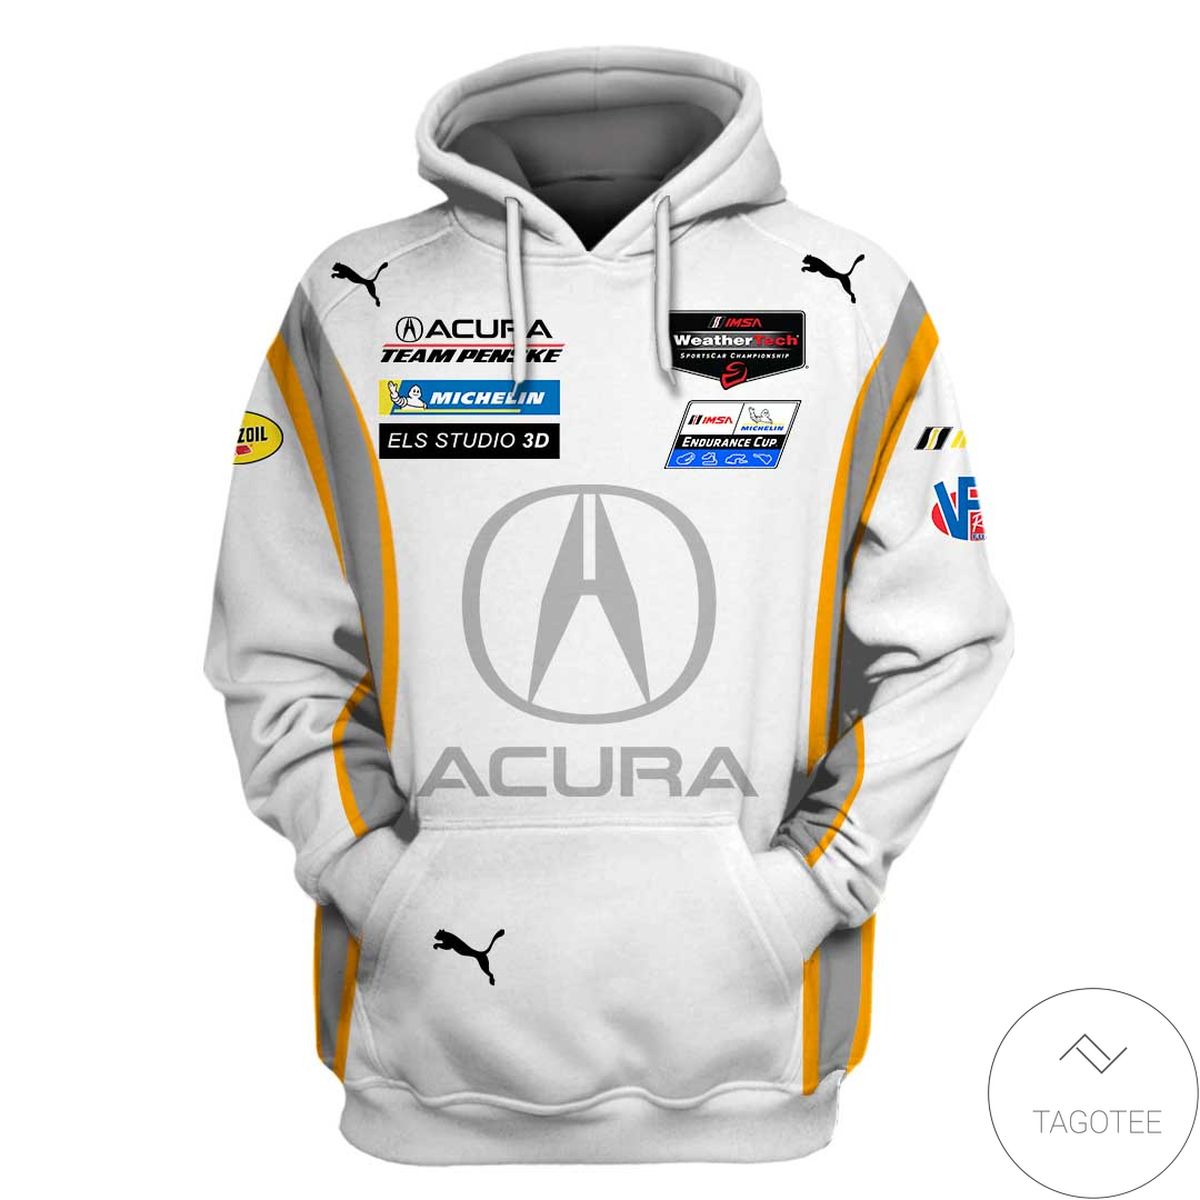 Acura Rallying Branded Unisex Racing Car  3d Hoodie